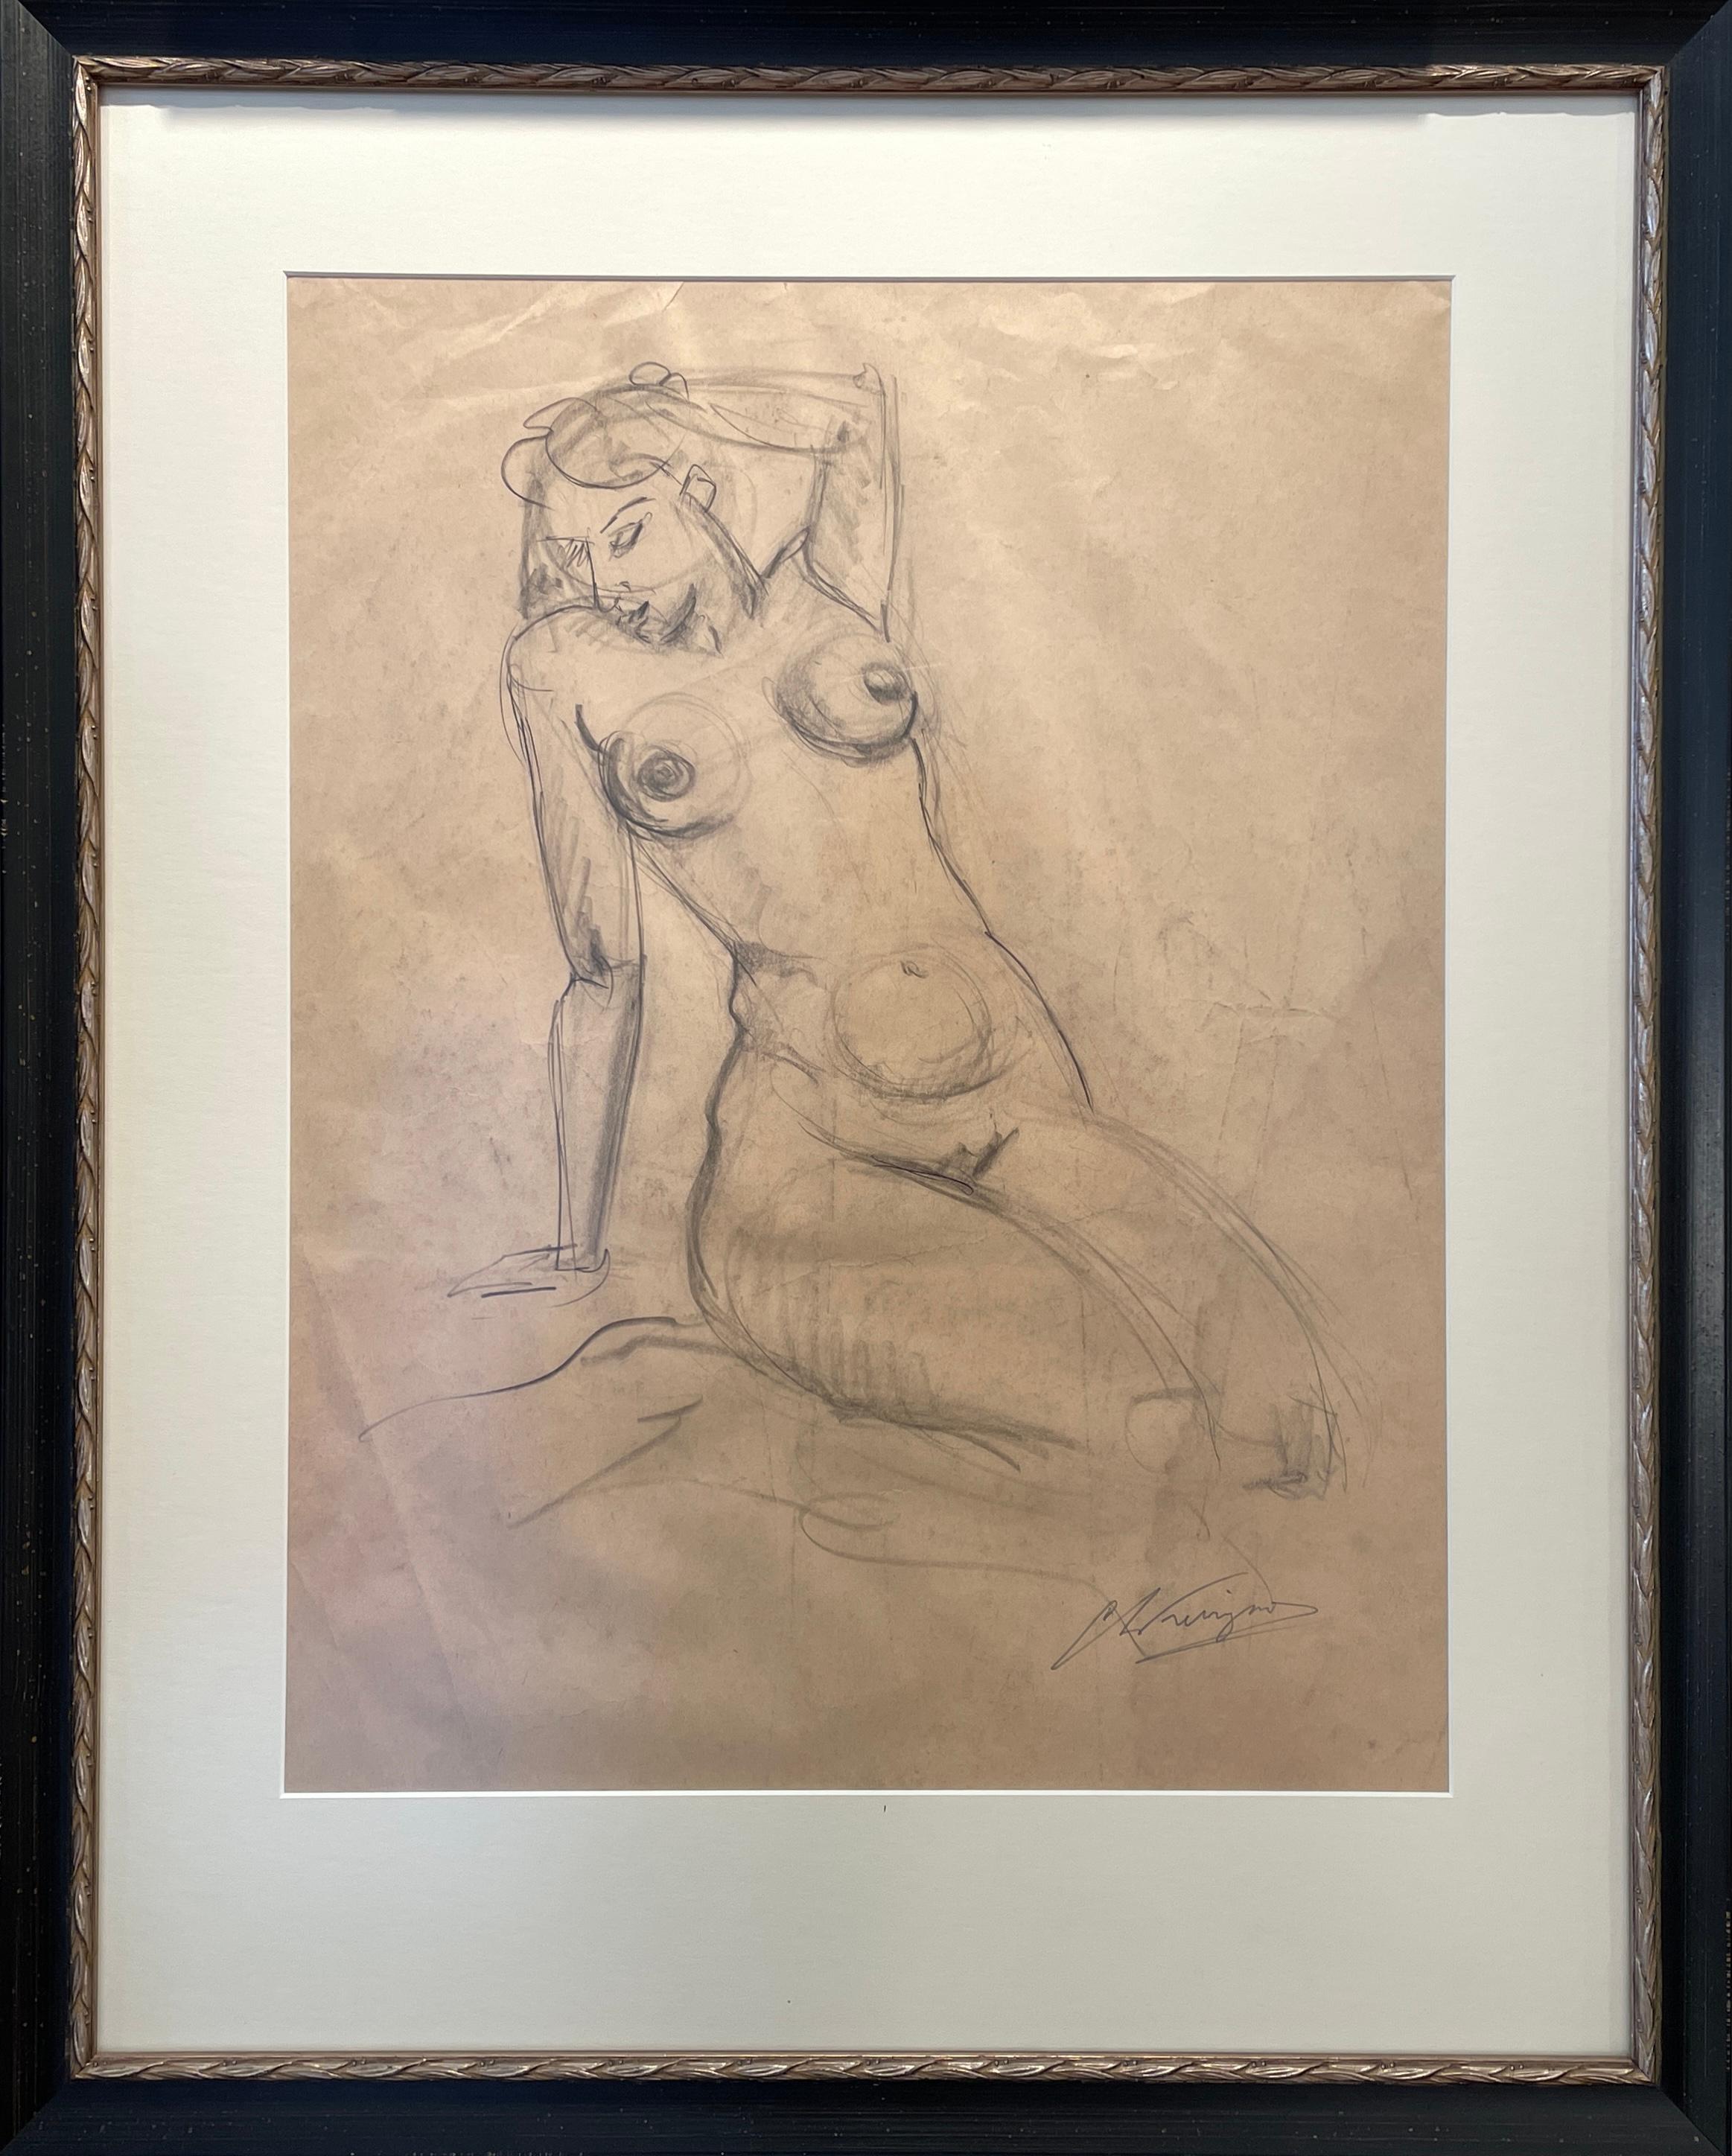 In den nuancierten Bleistiftstrichen von Chris Ferrignos 19,5" x 15" großem figurativen Akt ist eine entspannte und doch dynamische Form mit anmutiger Leichtigkeit eingefangen. Die geschickte Hand des Künstlers, der das Bild 1972 auf Papier